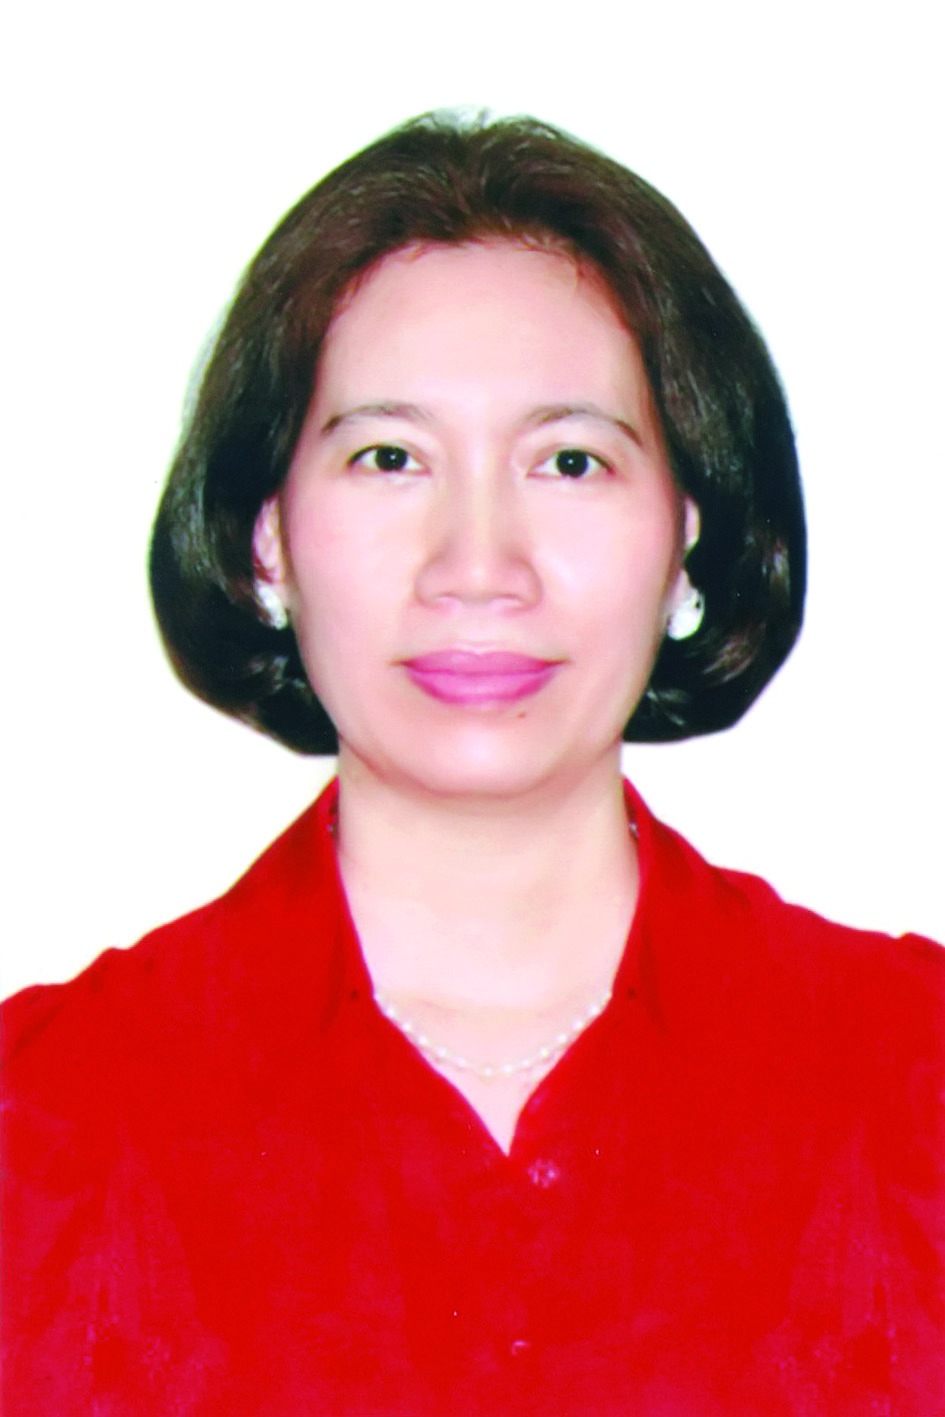 Chương trình hành động của bà Nguyễn Bích Thủy, ứng cử viên đại biểu HĐND TP Hà Nội nhiệm kỳ 2021 - 2026 - Ảnh 1